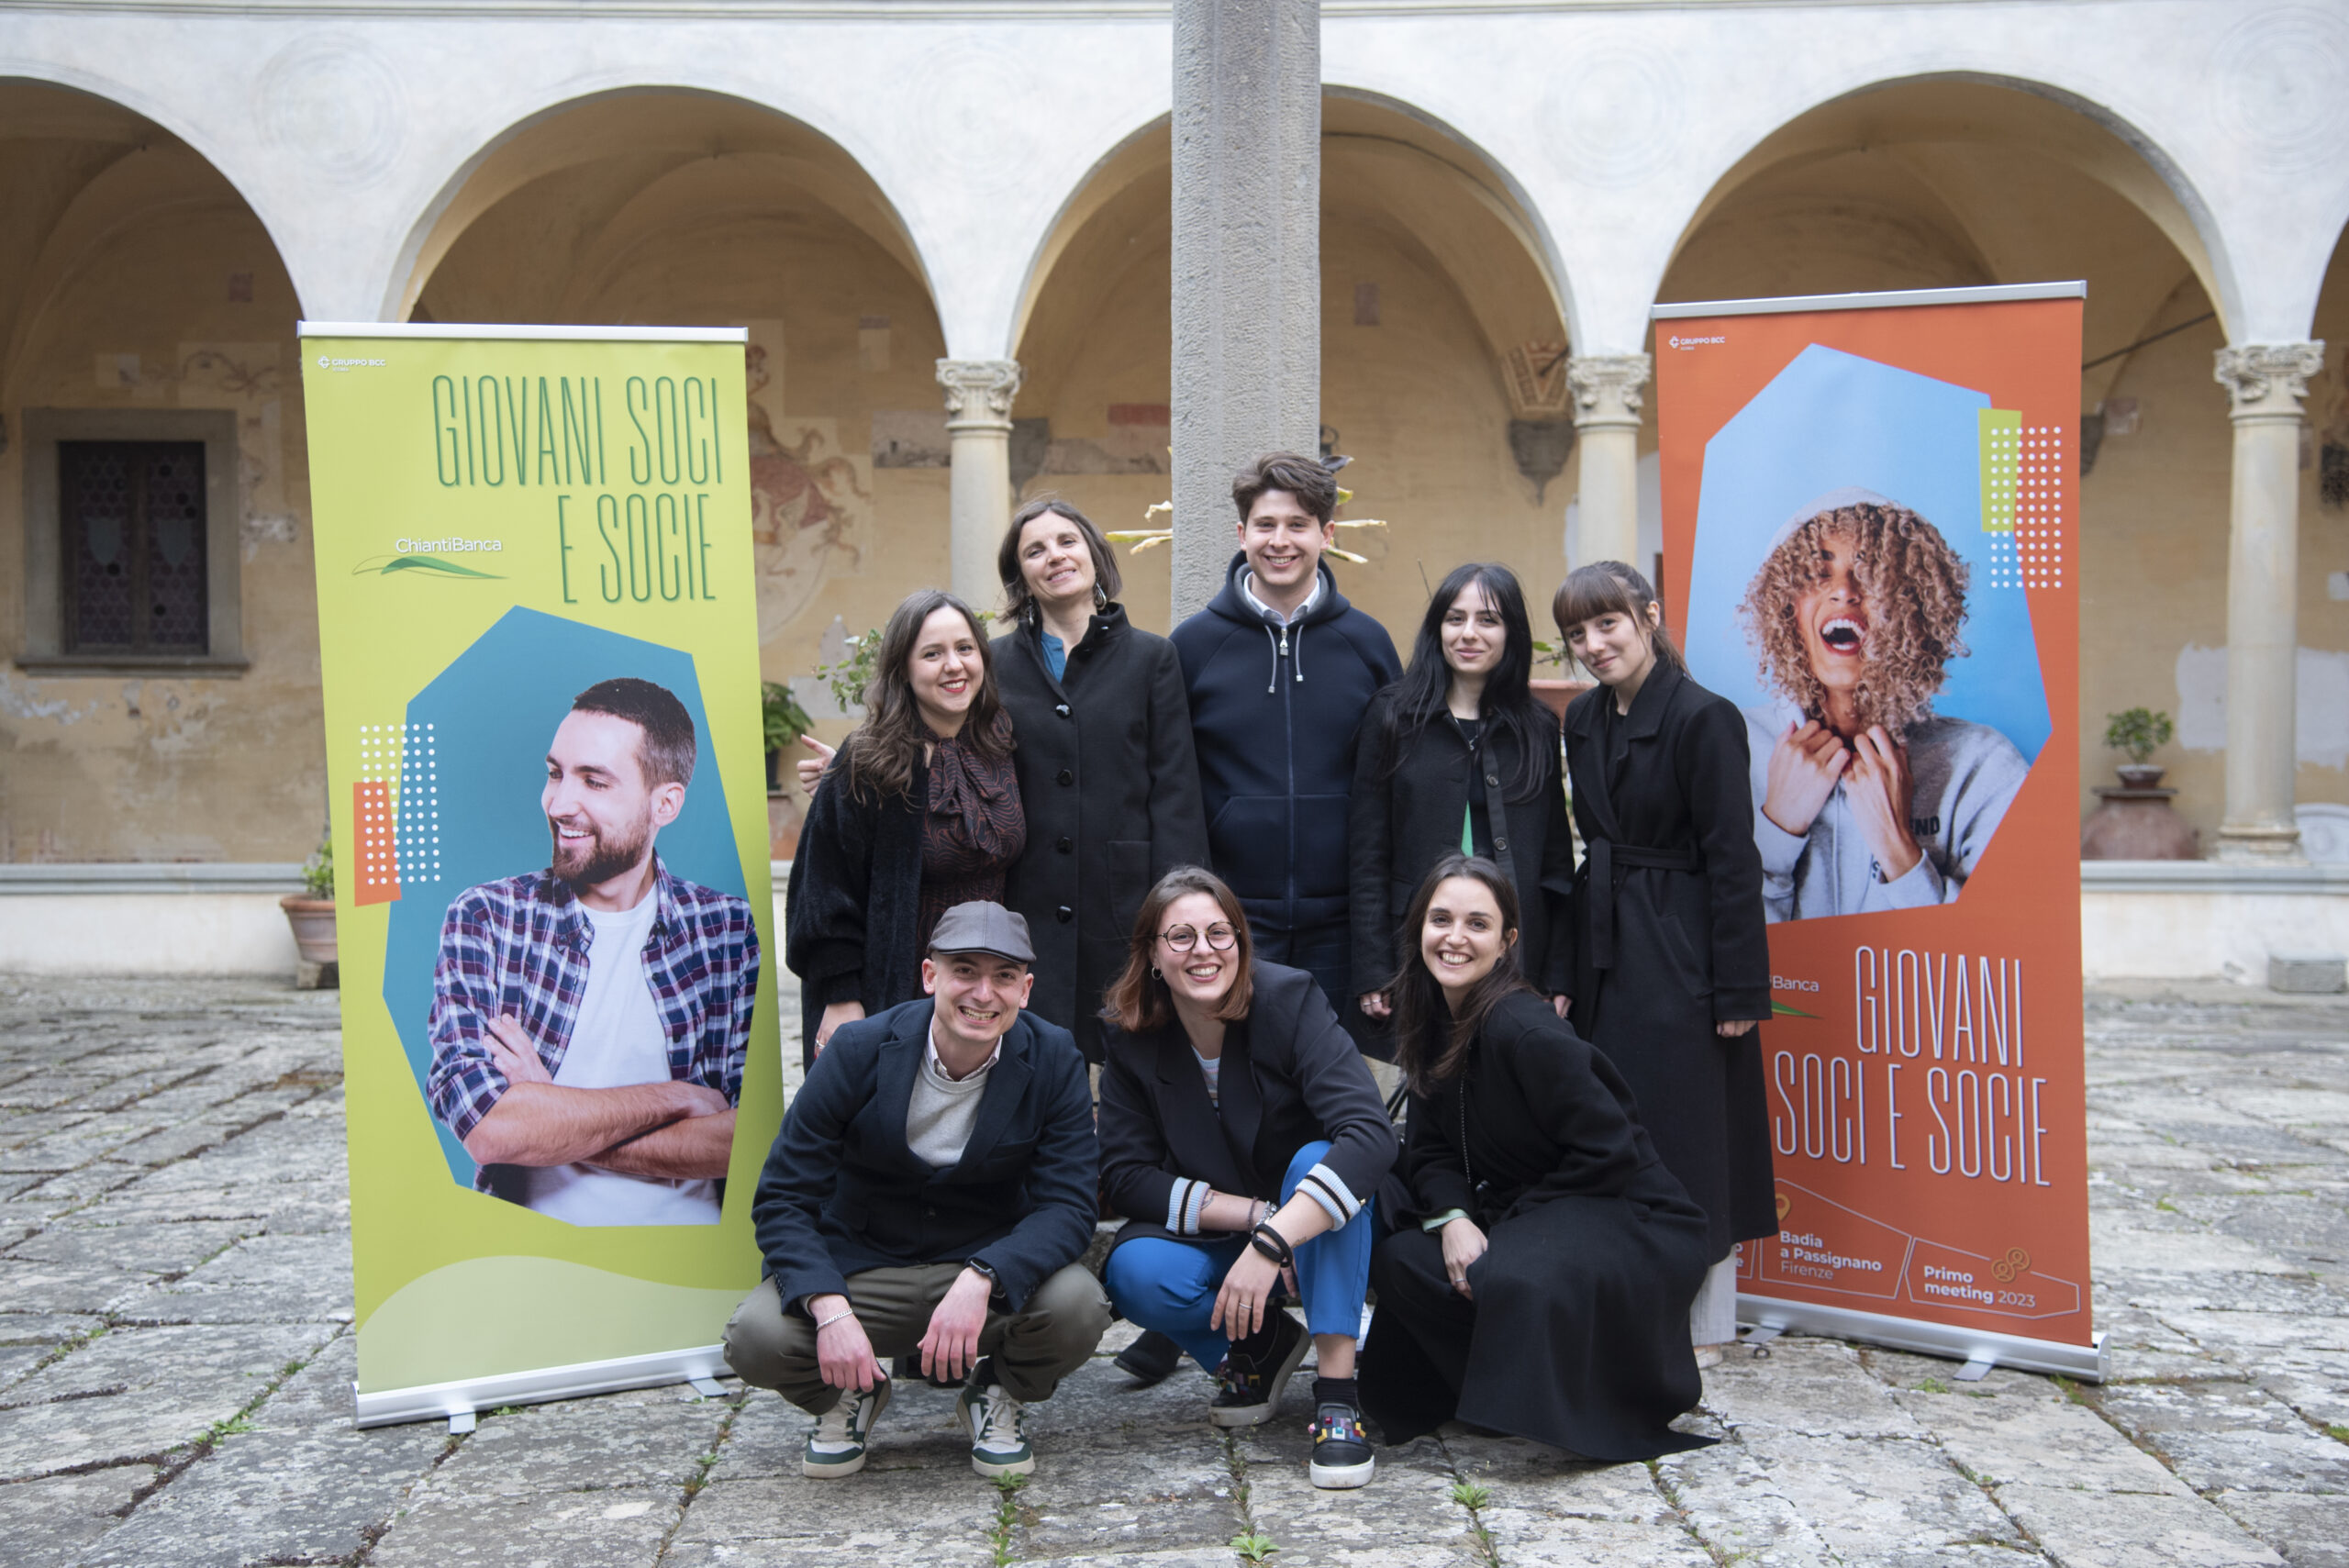 L’entusiasmo dei 150 giovani Soci e Socie a Badia a Passignano